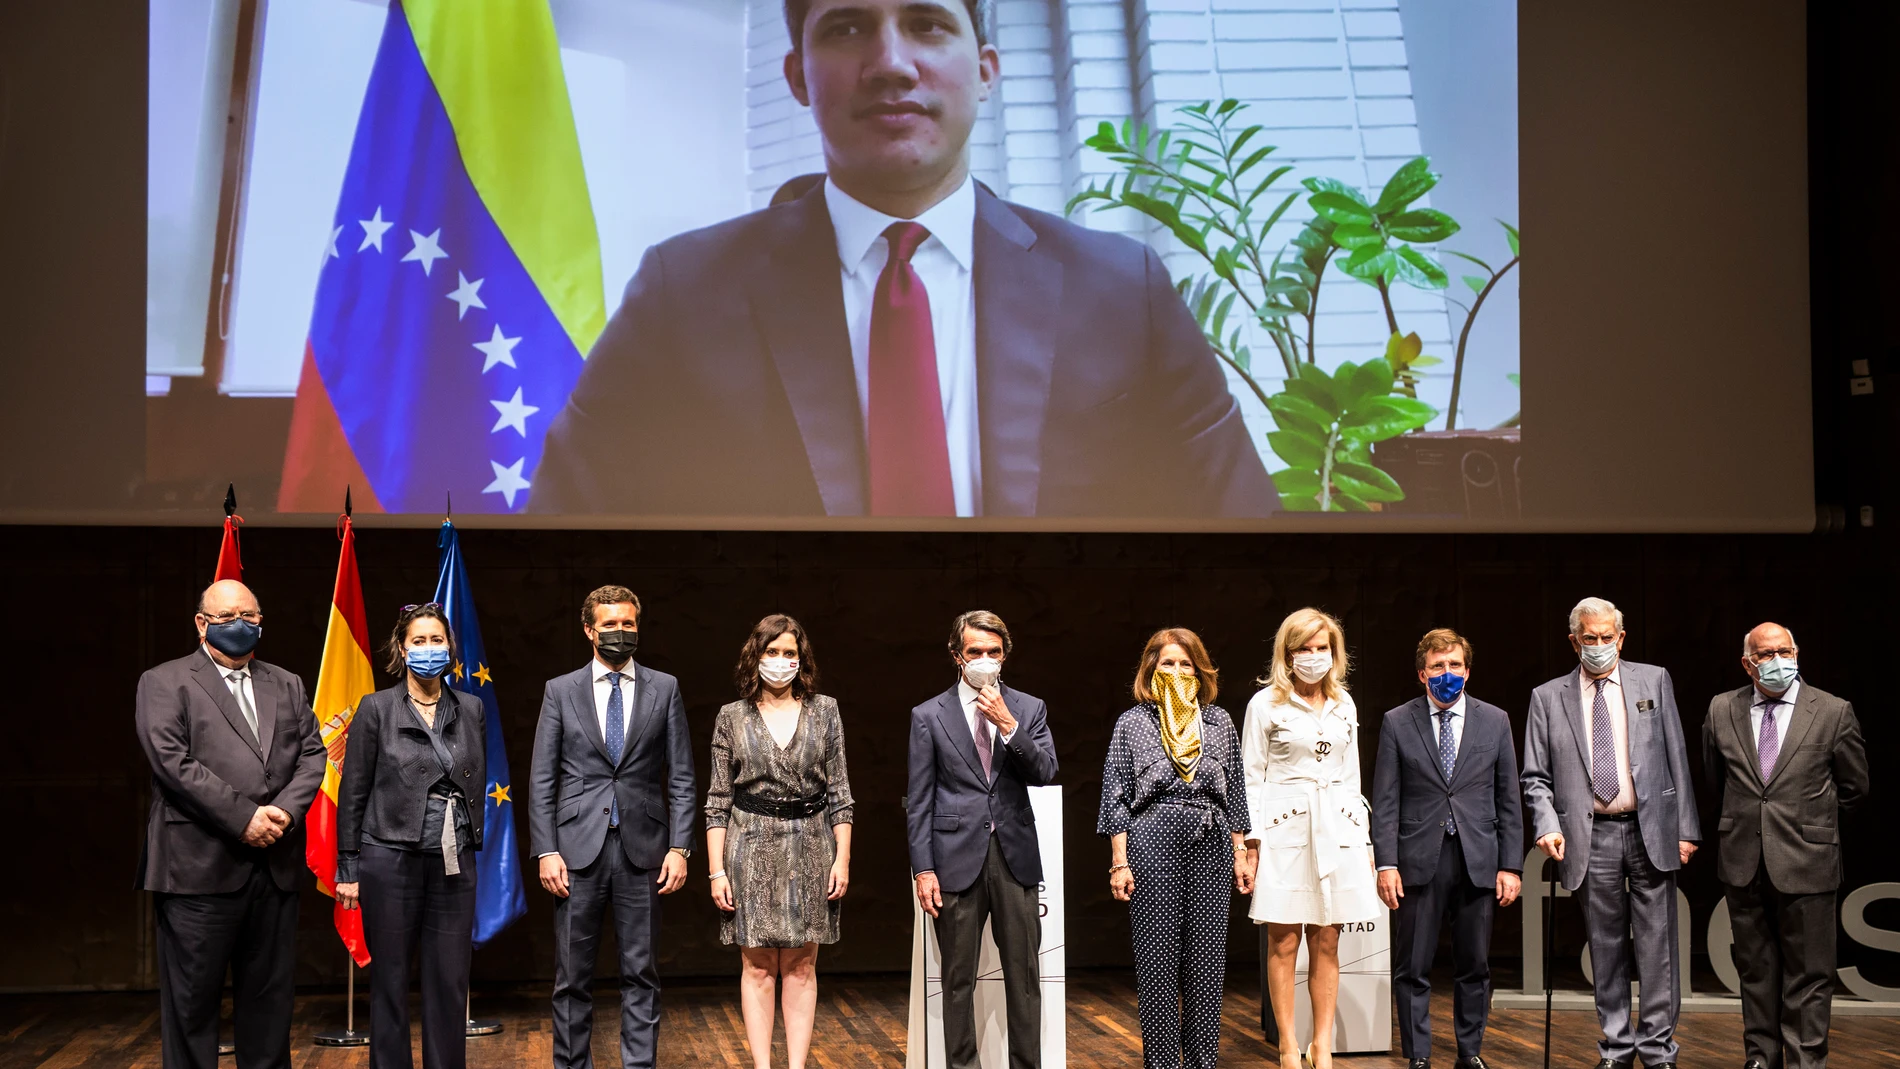 Foto de familia de los asistentes y del líder opositor venezolano Juan Guaidó por videoconferencia, durante la entrega del X Premio FAES de la Libertad